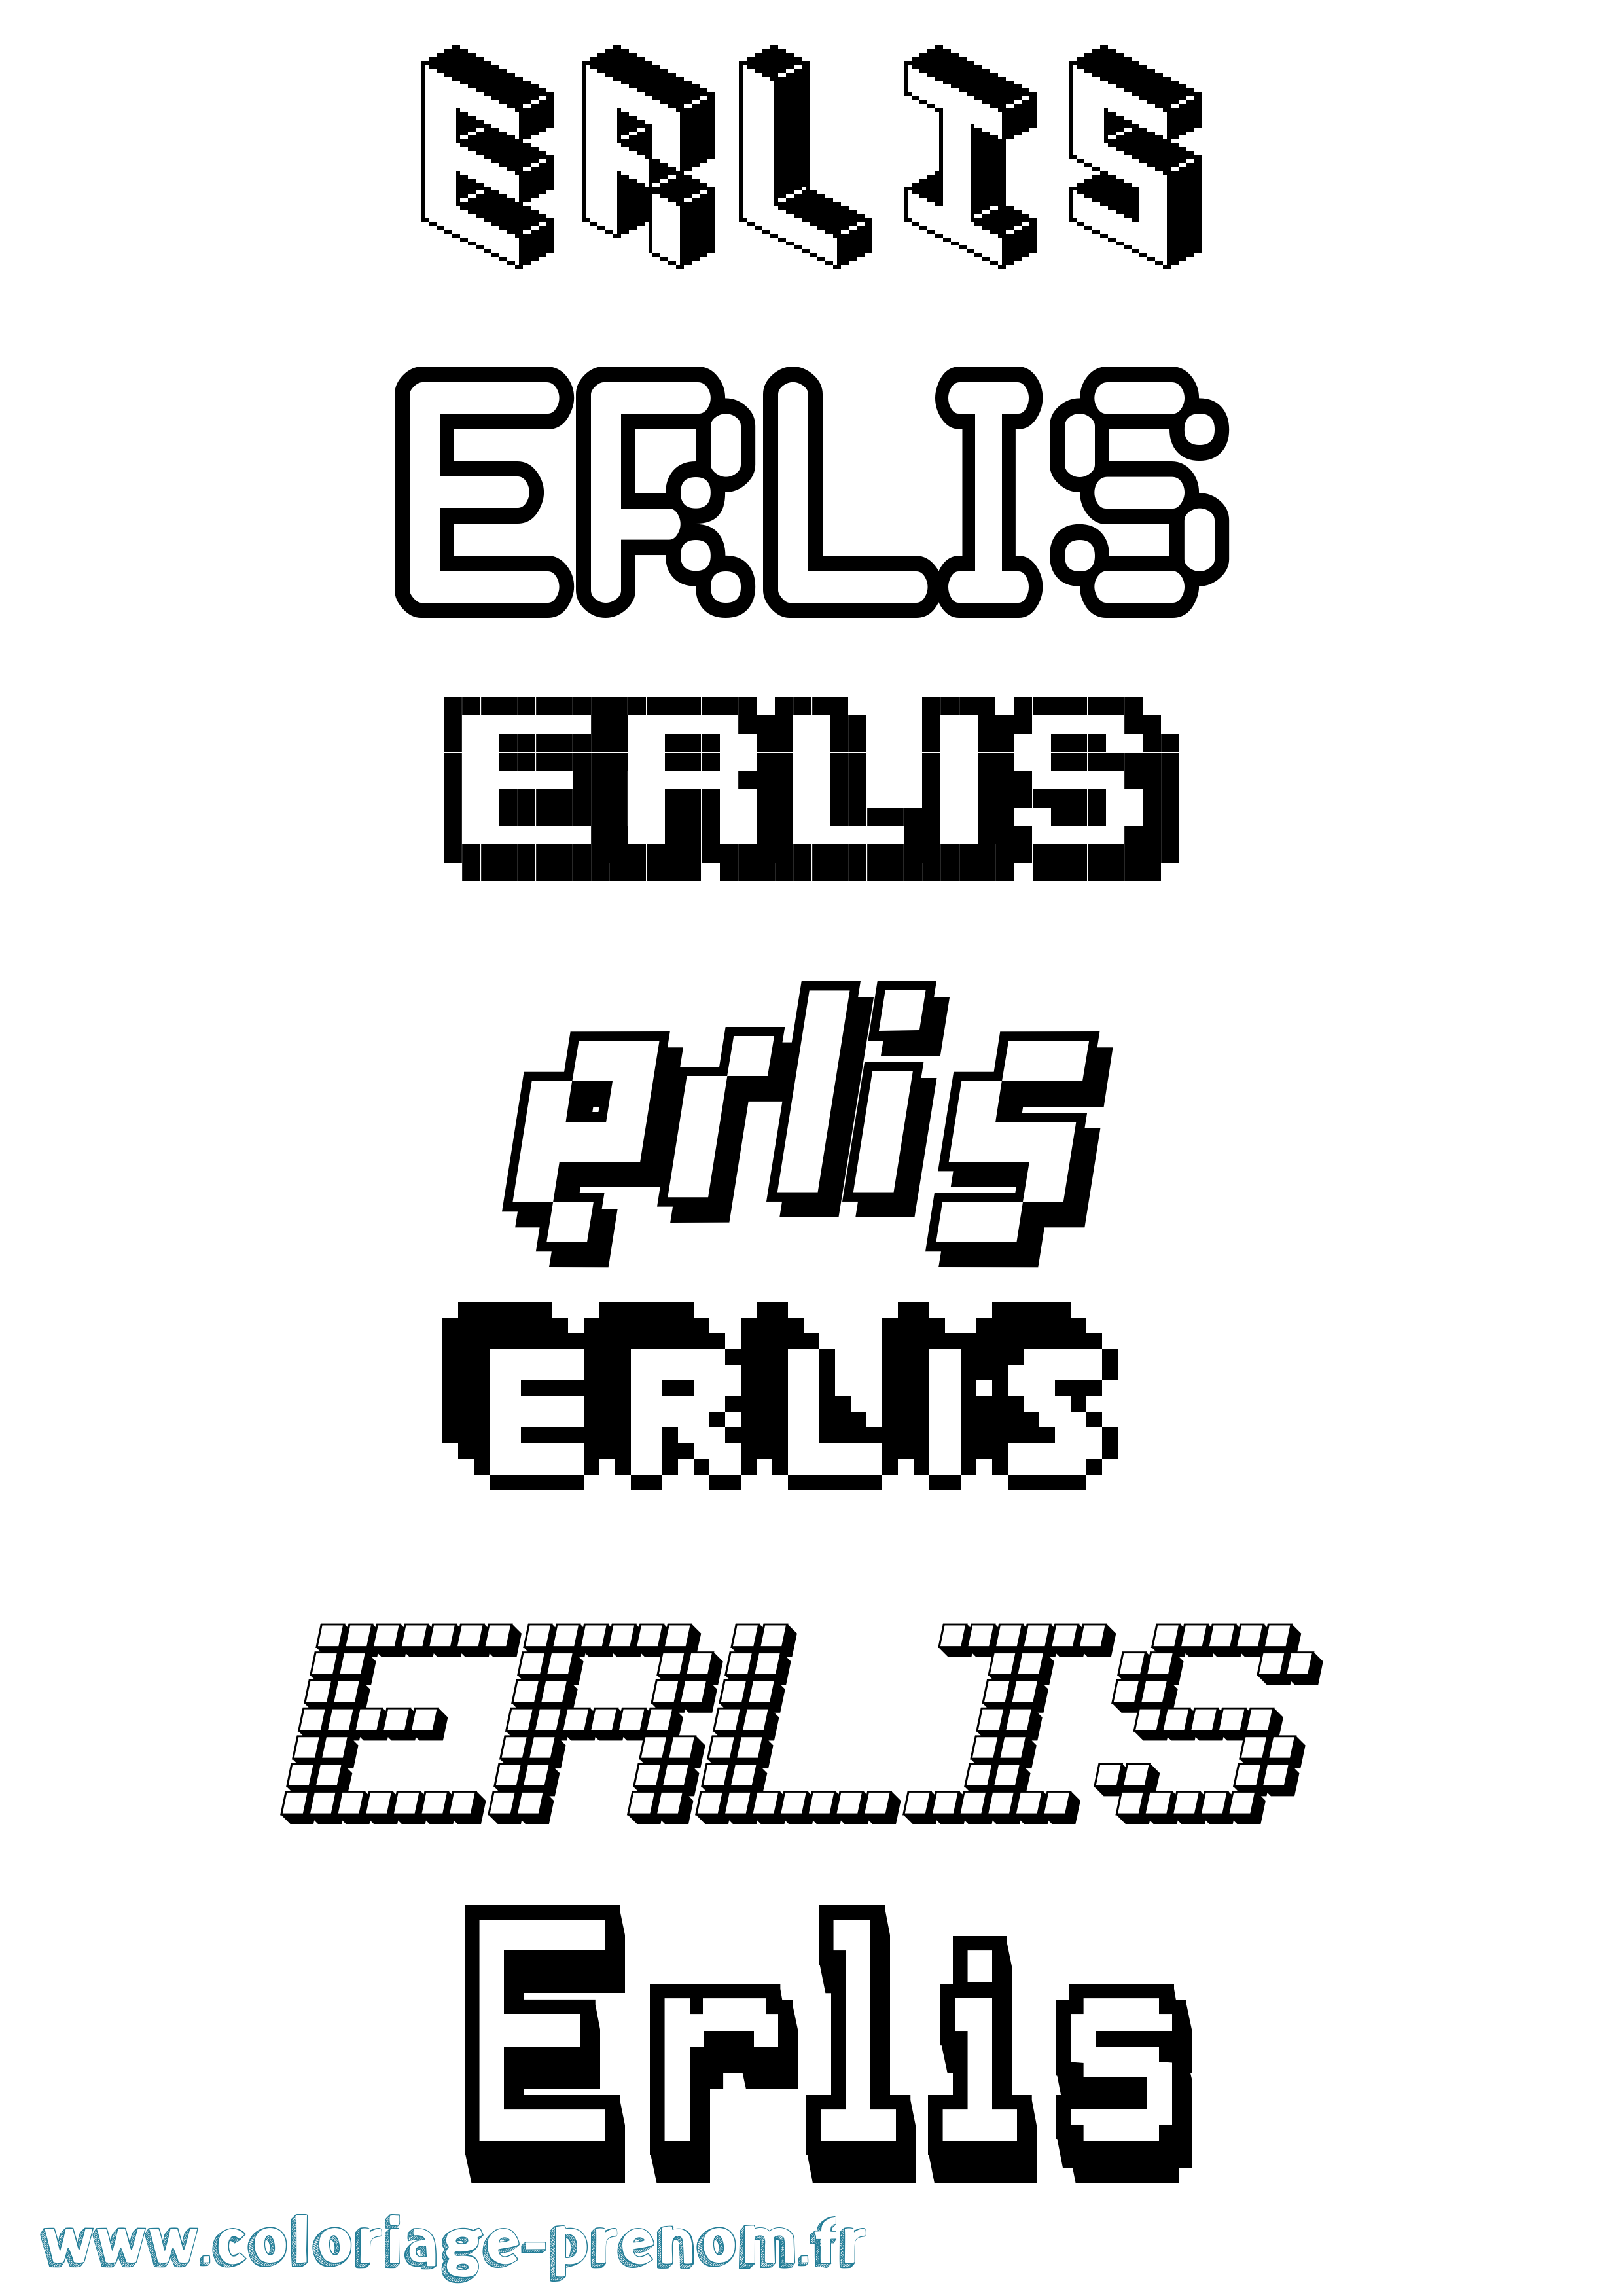 Coloriage prénom Erlis Pixel